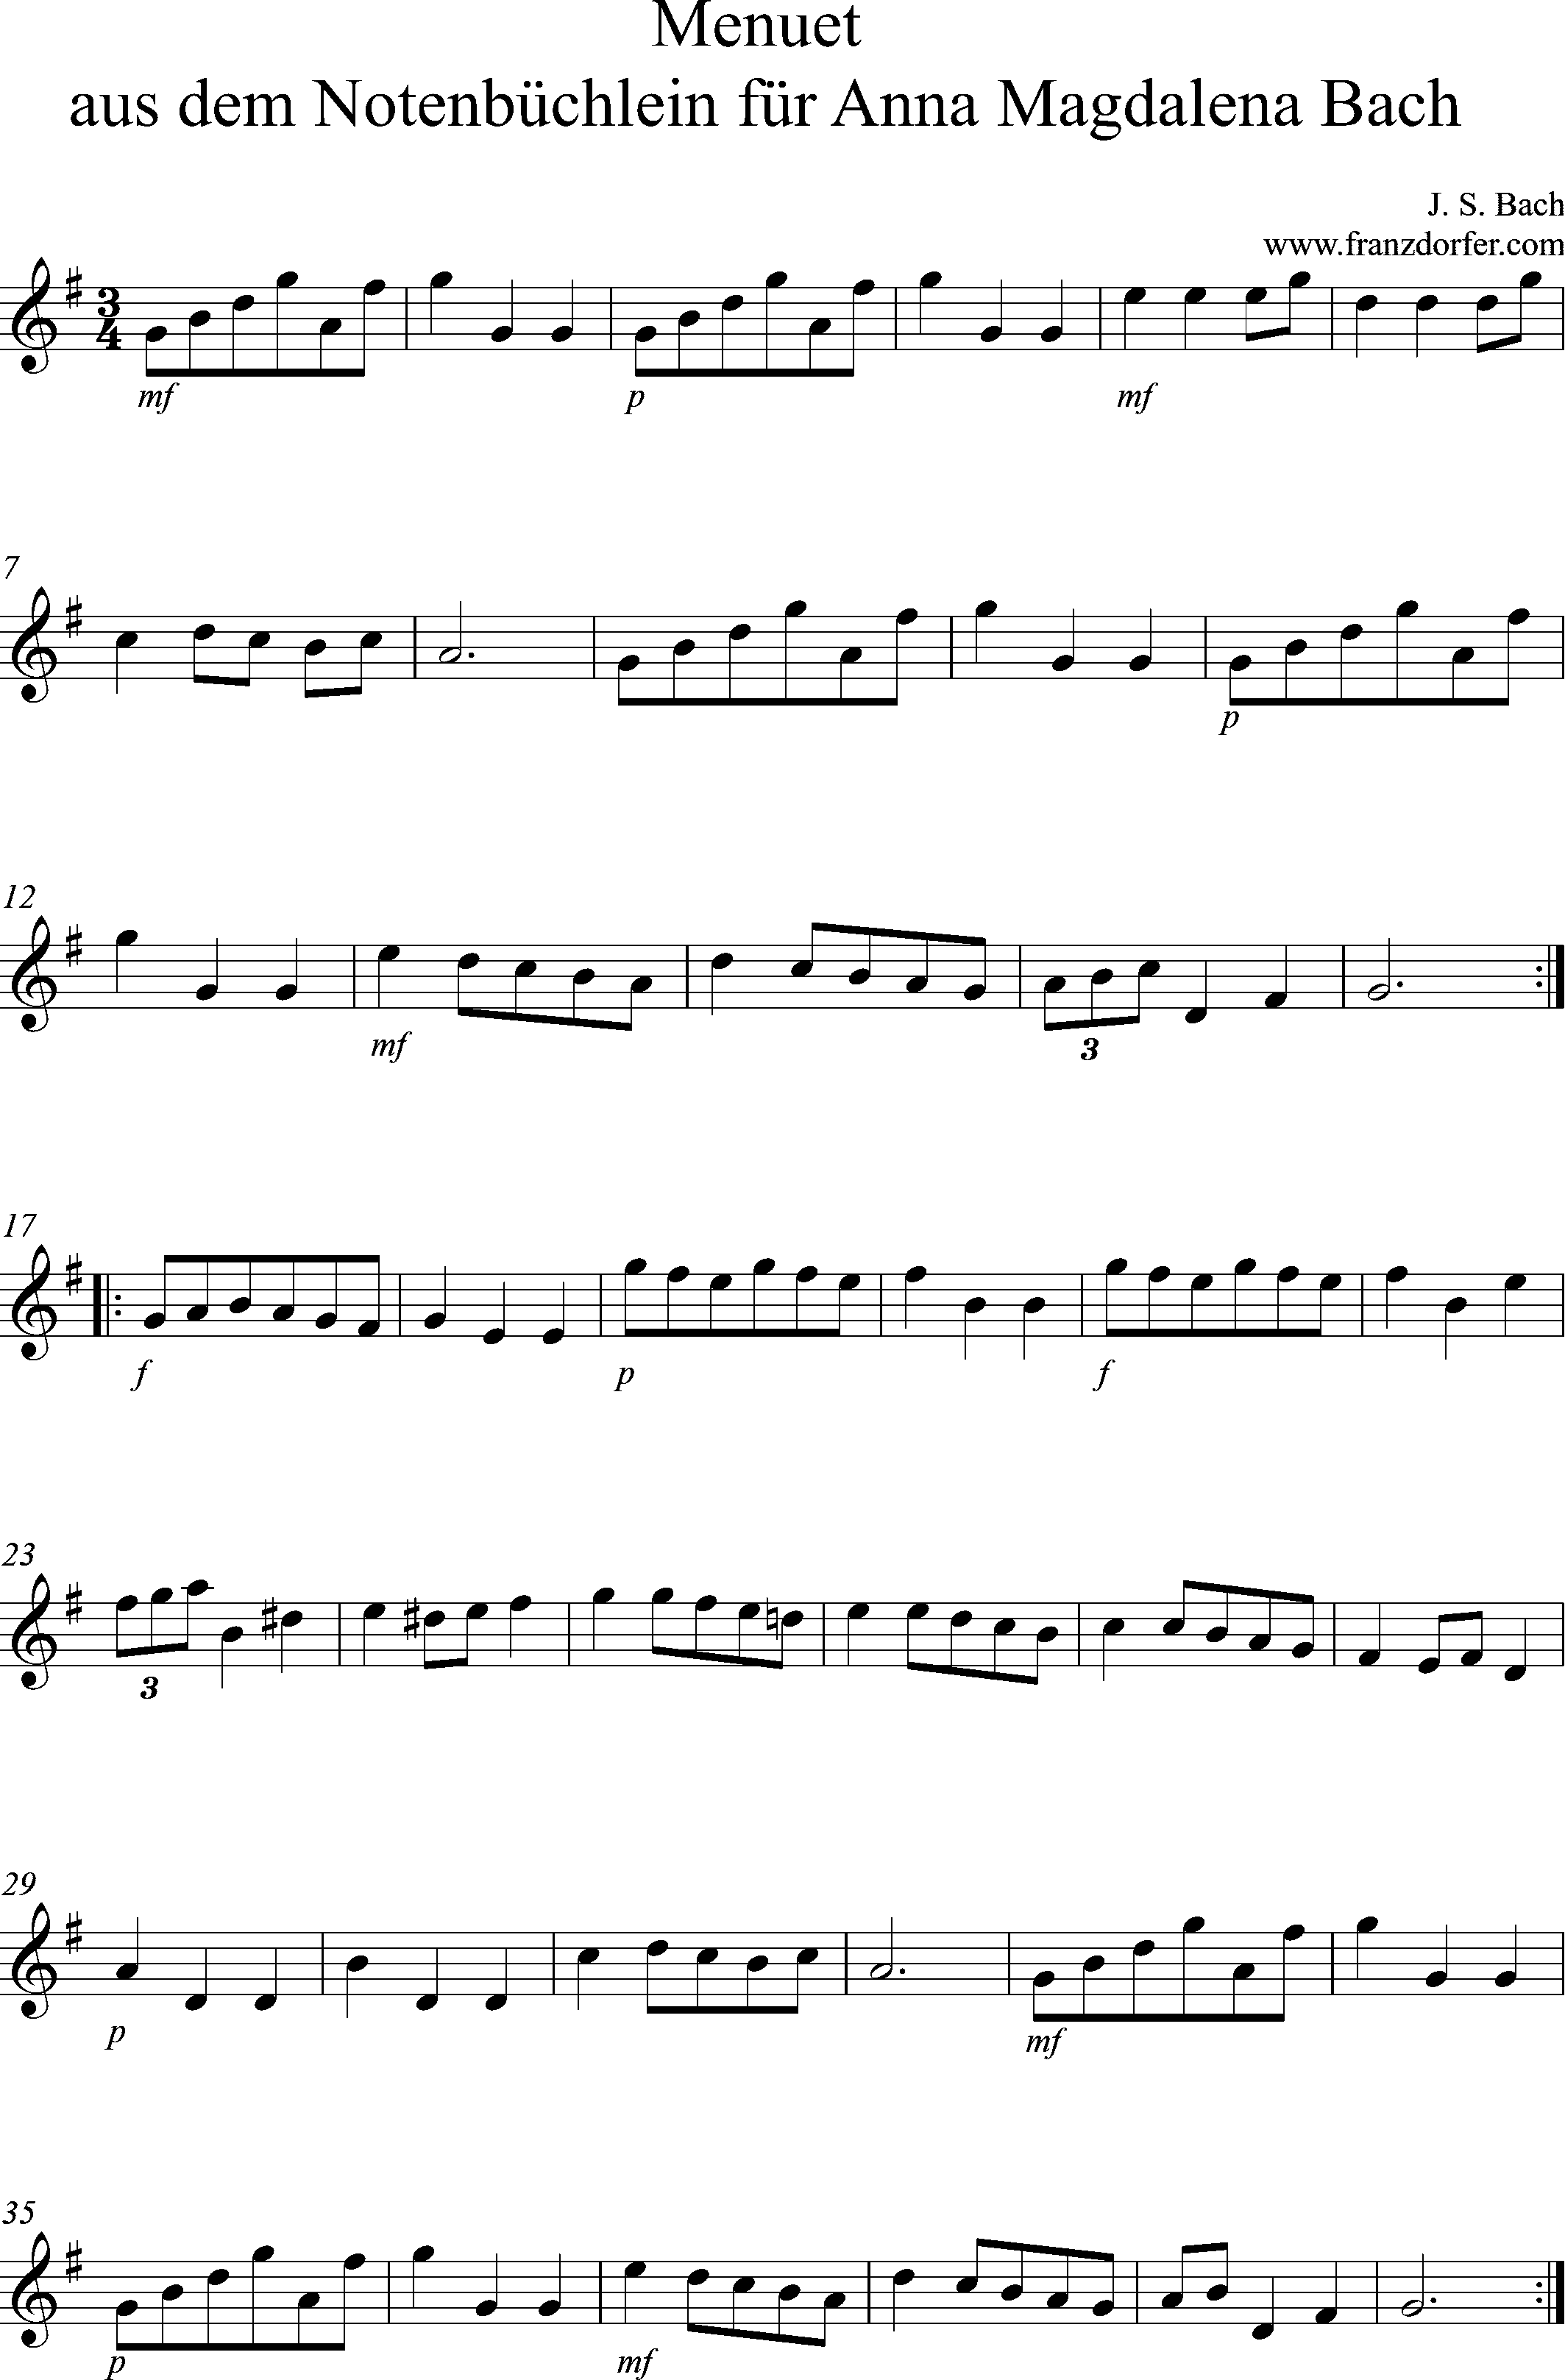 Clarinet sheetmusic, Menuet notenbüchlein